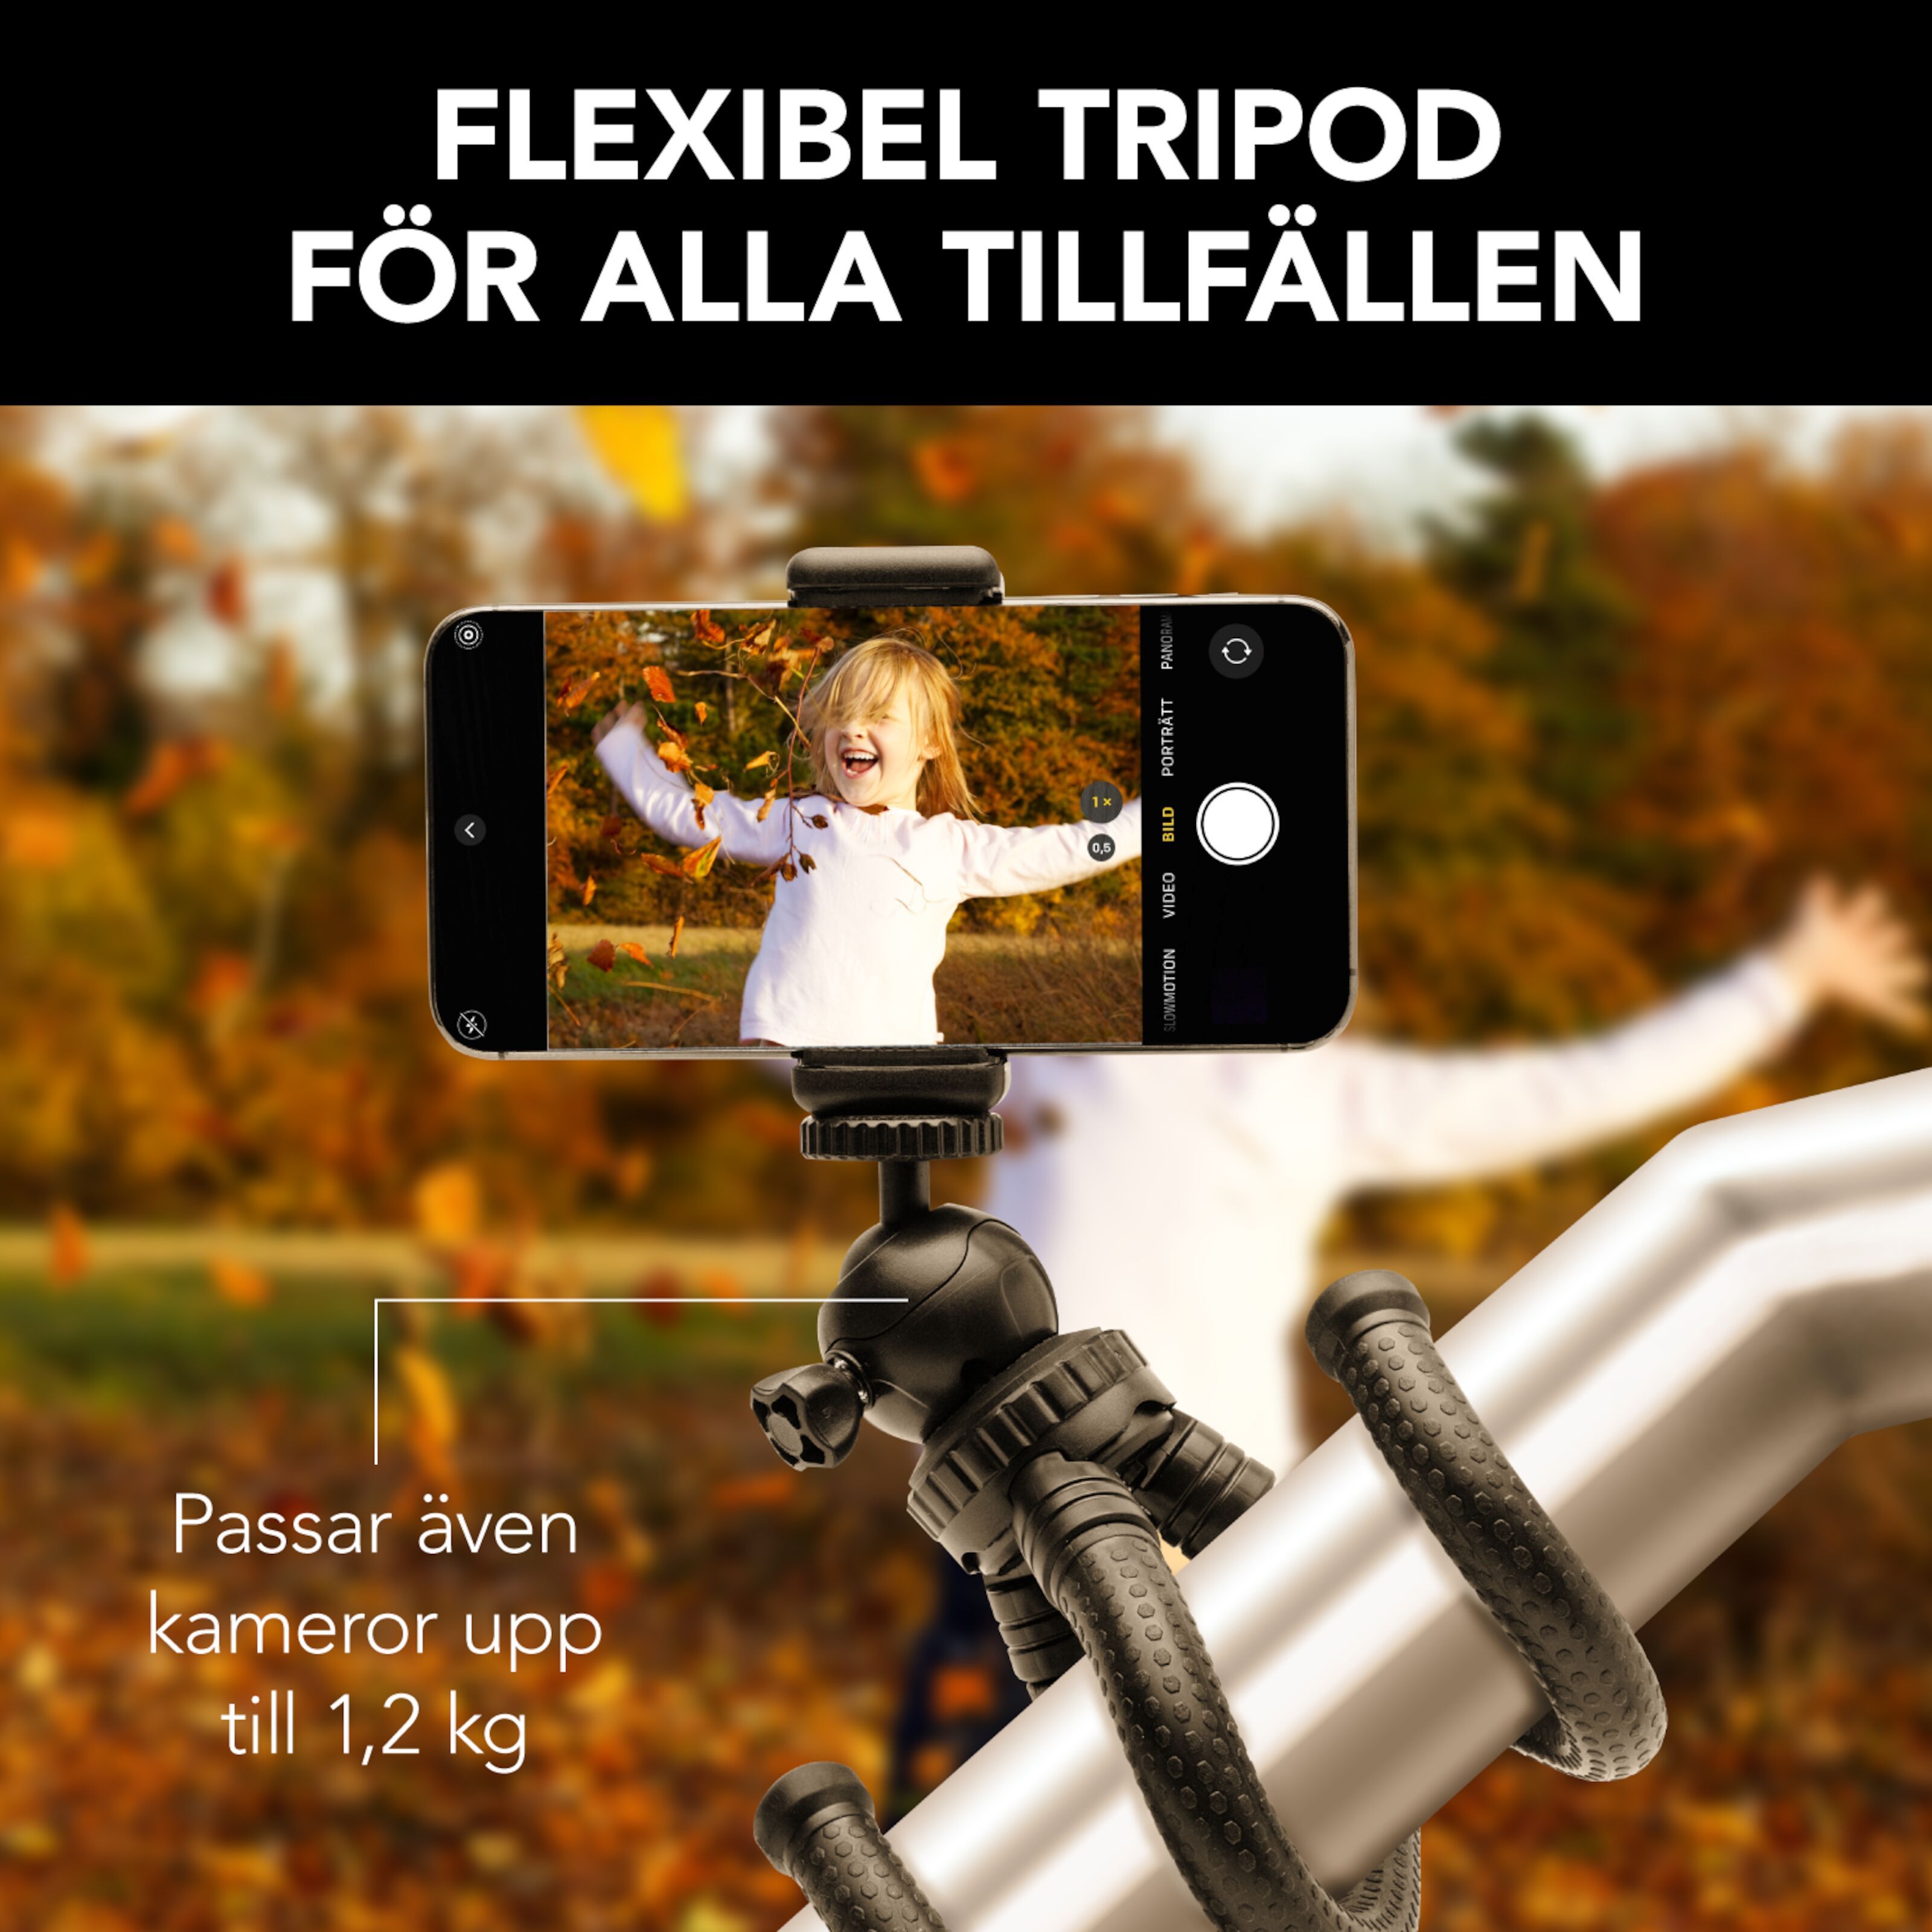 Linocell Kraftig kamera och mobil - | Kjell.com